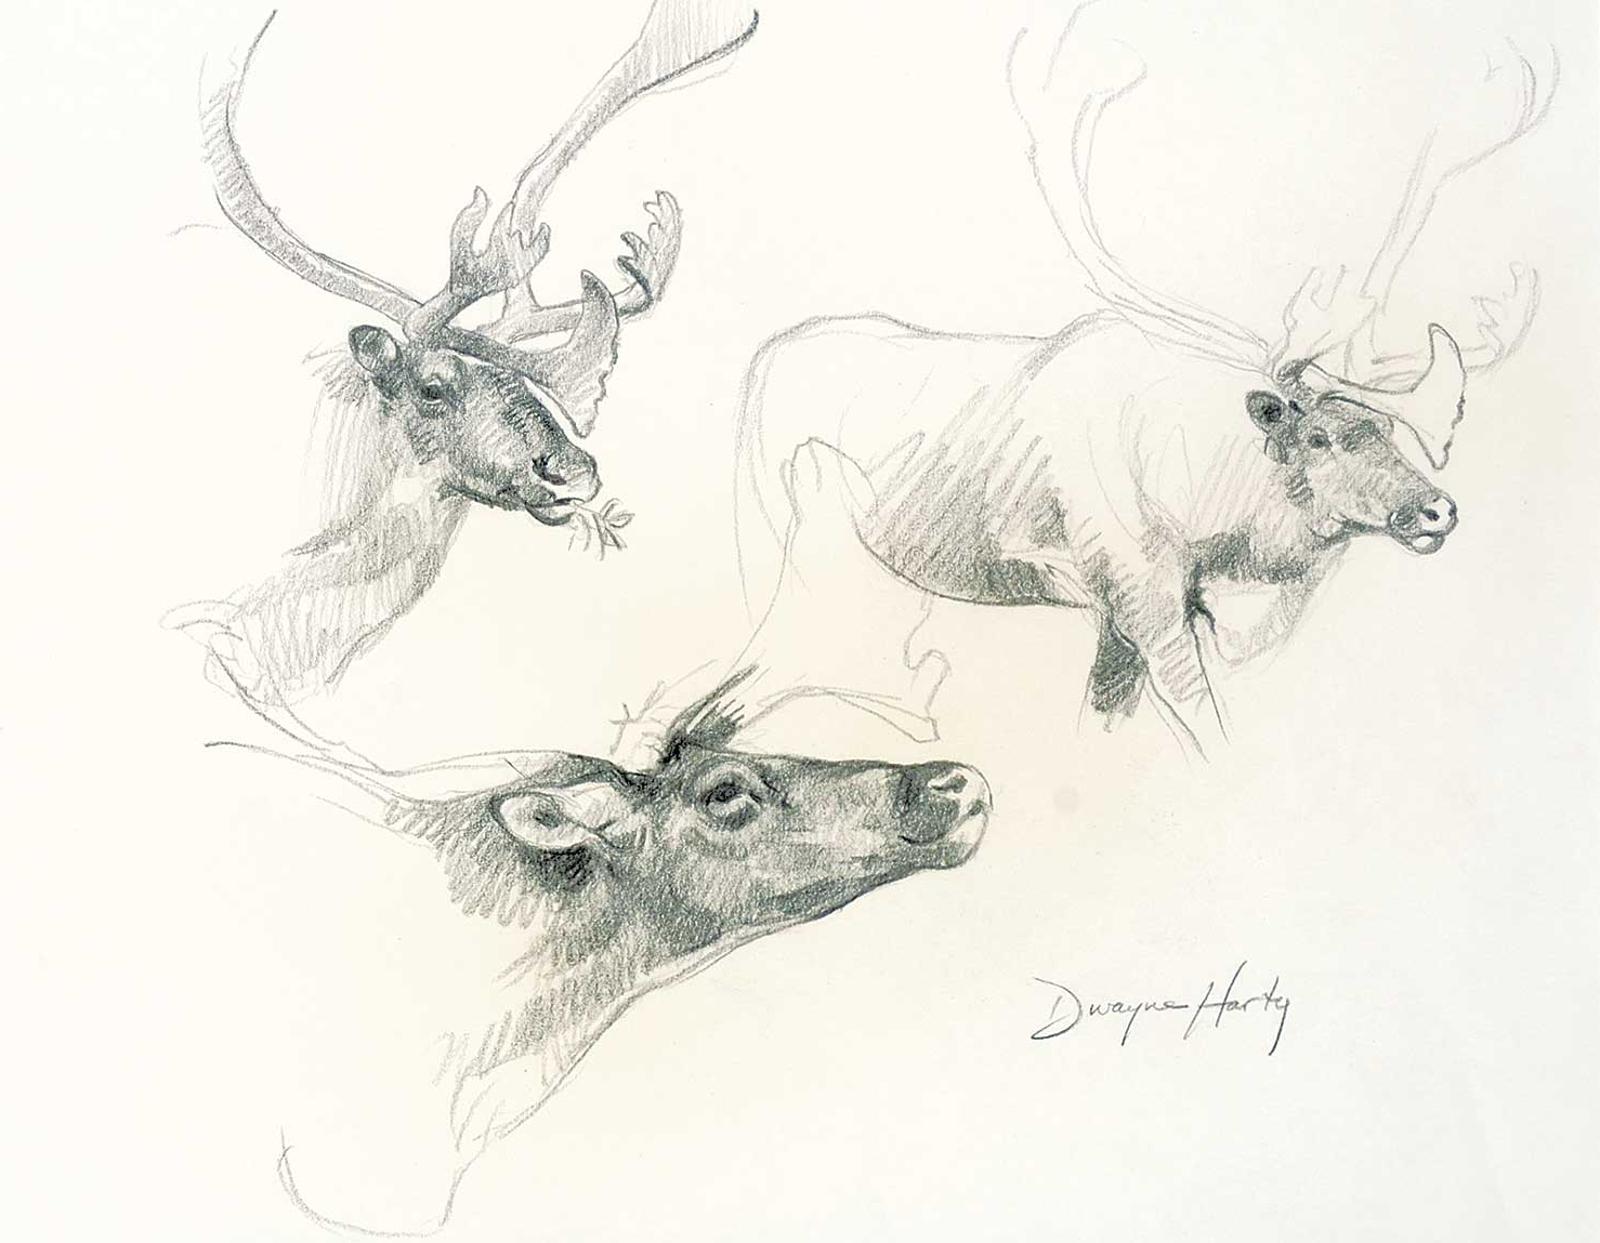 Dwayne Harty (1957) - Untitled - Caribou Study